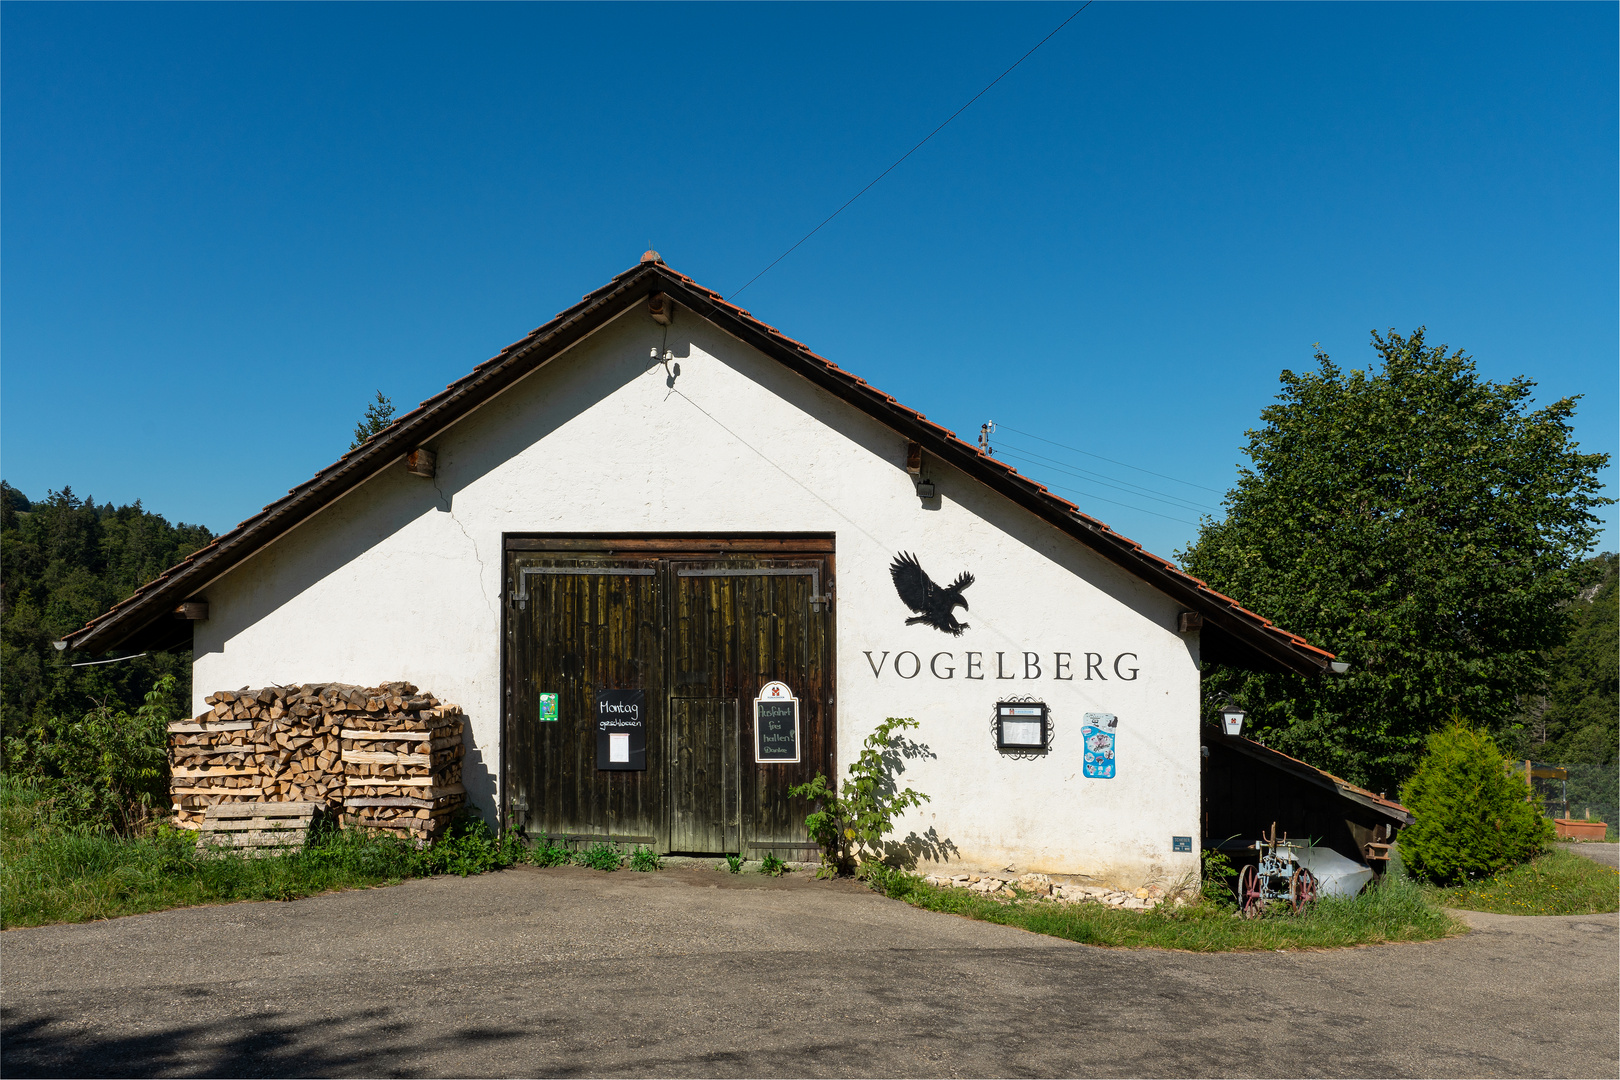 Vogelberg 1204 m ü.M